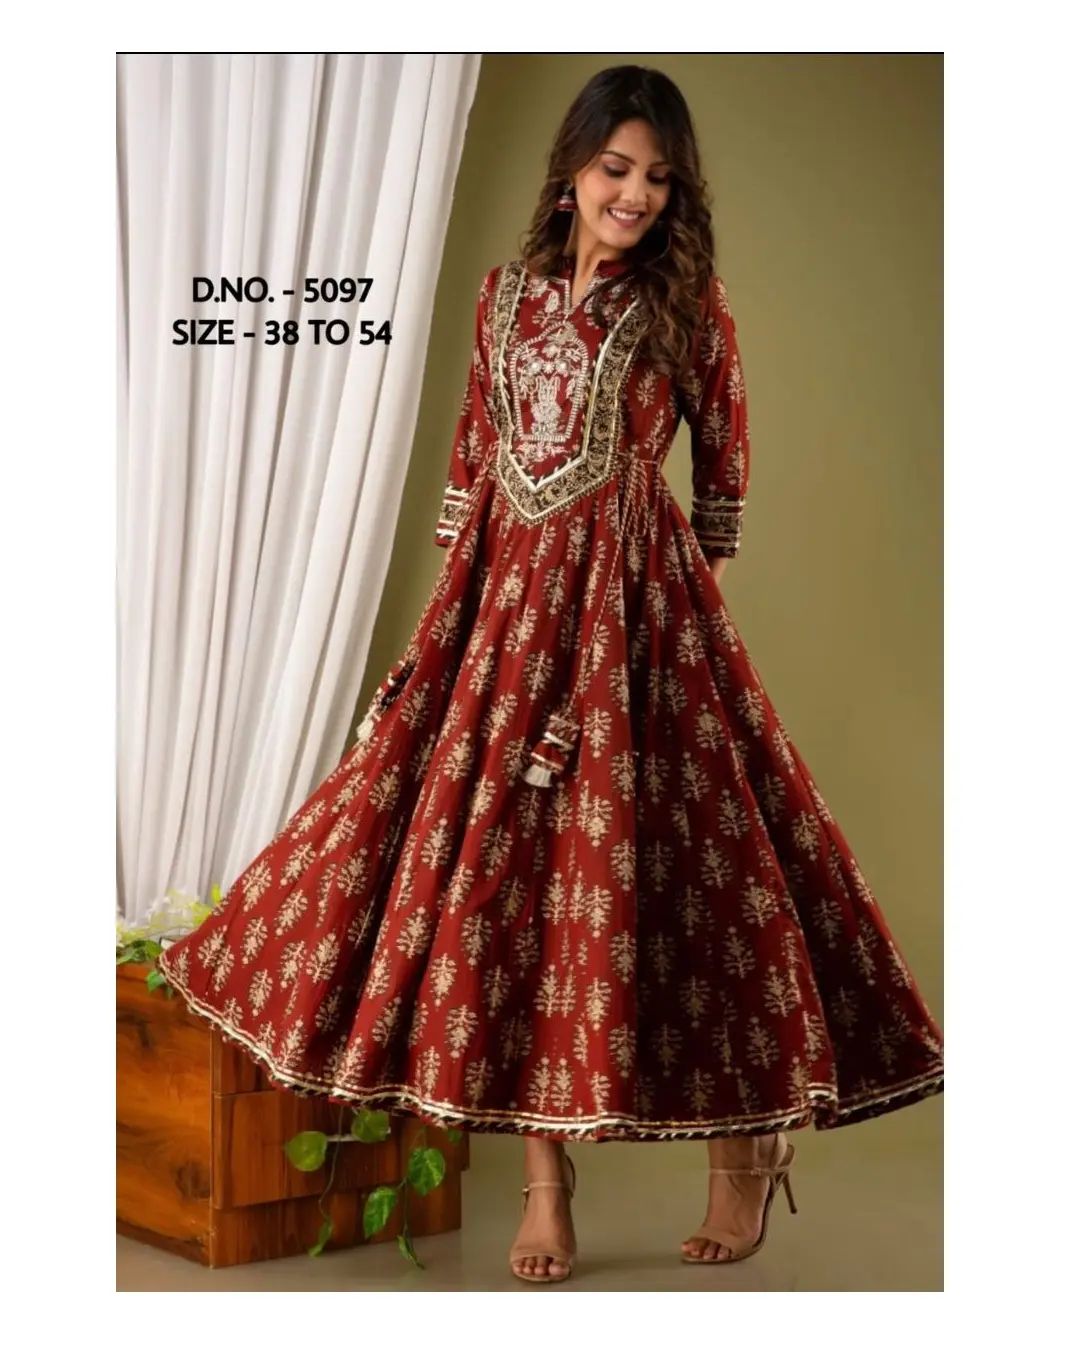 Женское длинное платье с принтом Anarkali, стильное платье из плотного искусственного шелка с вышивкой, длинное платье в стиле Королевского экспорта